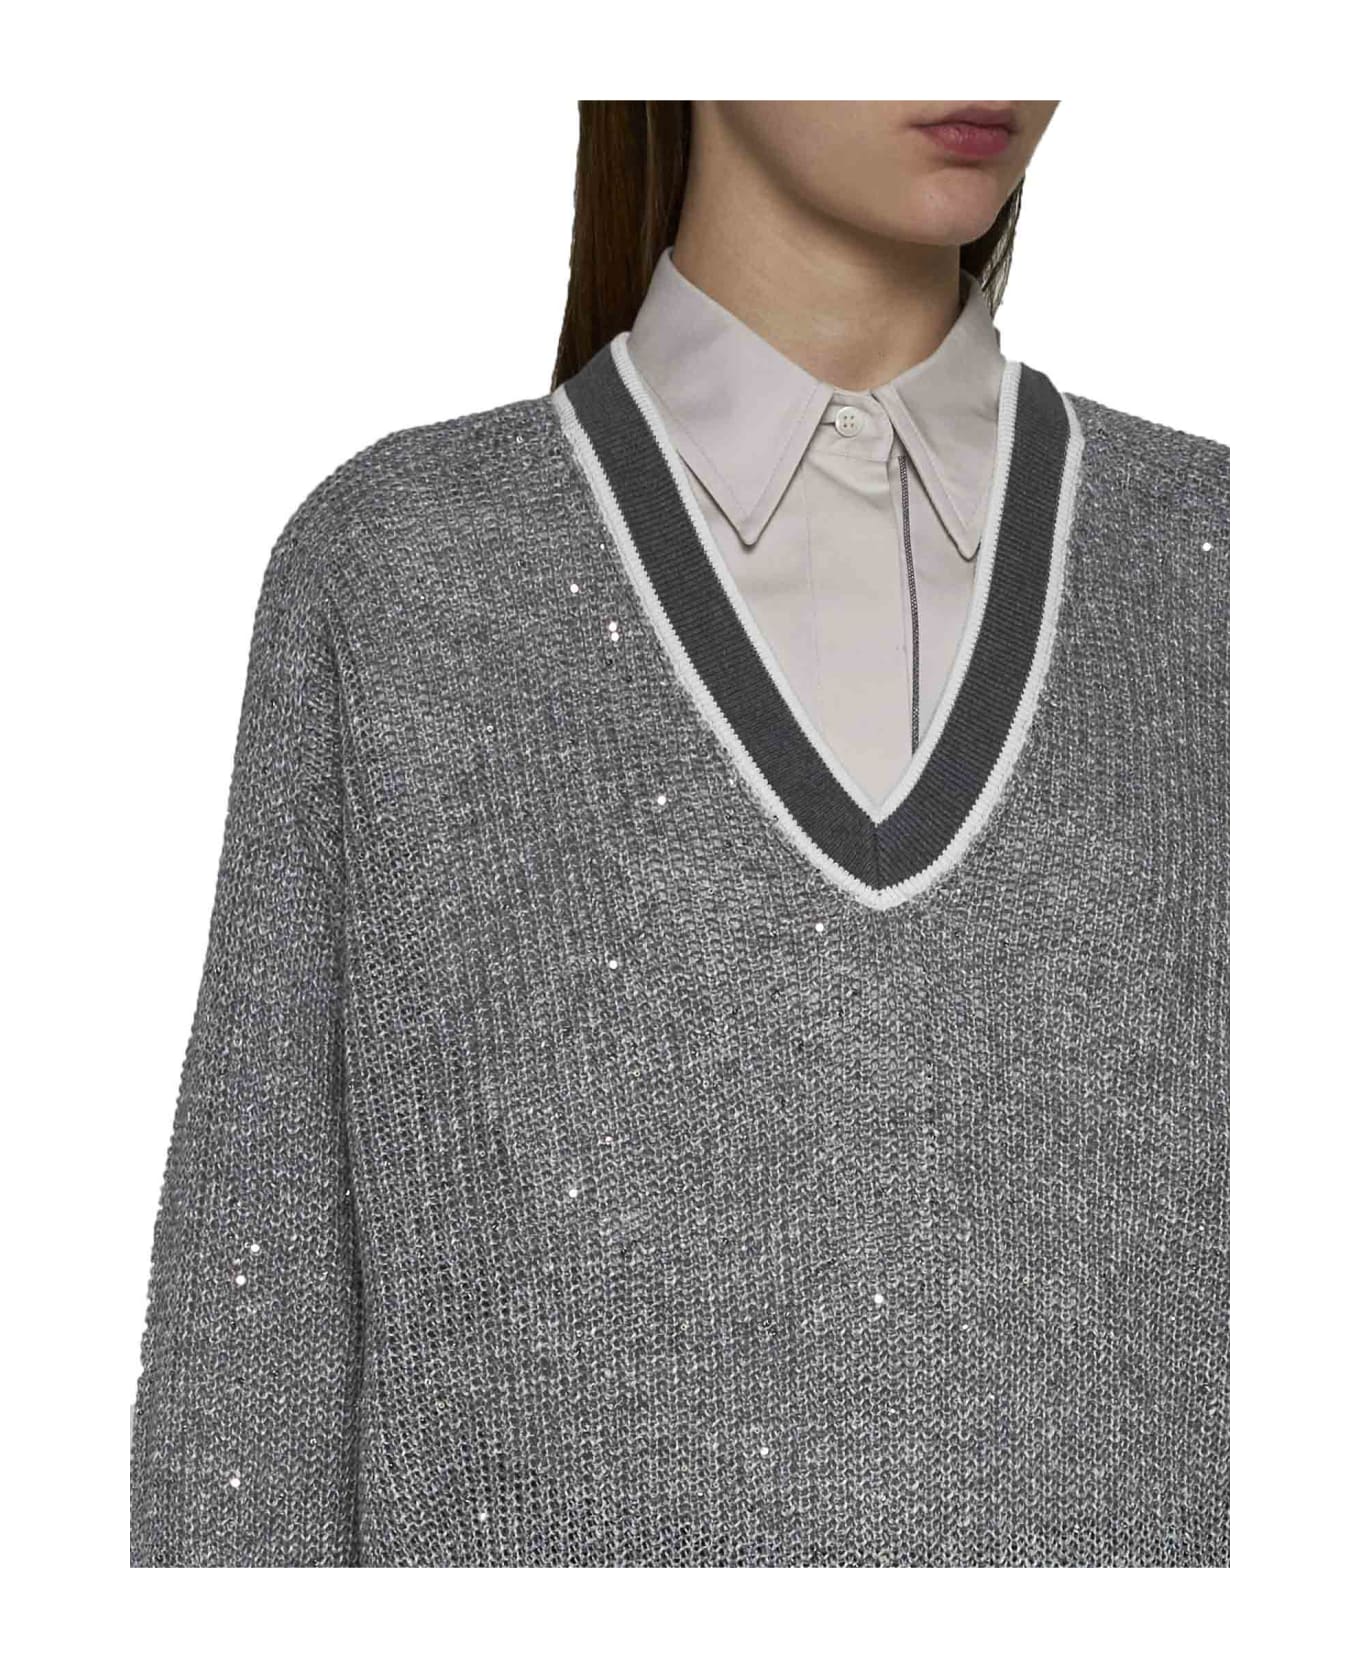 Brunello Cucinelli Sweater - Grigio medio